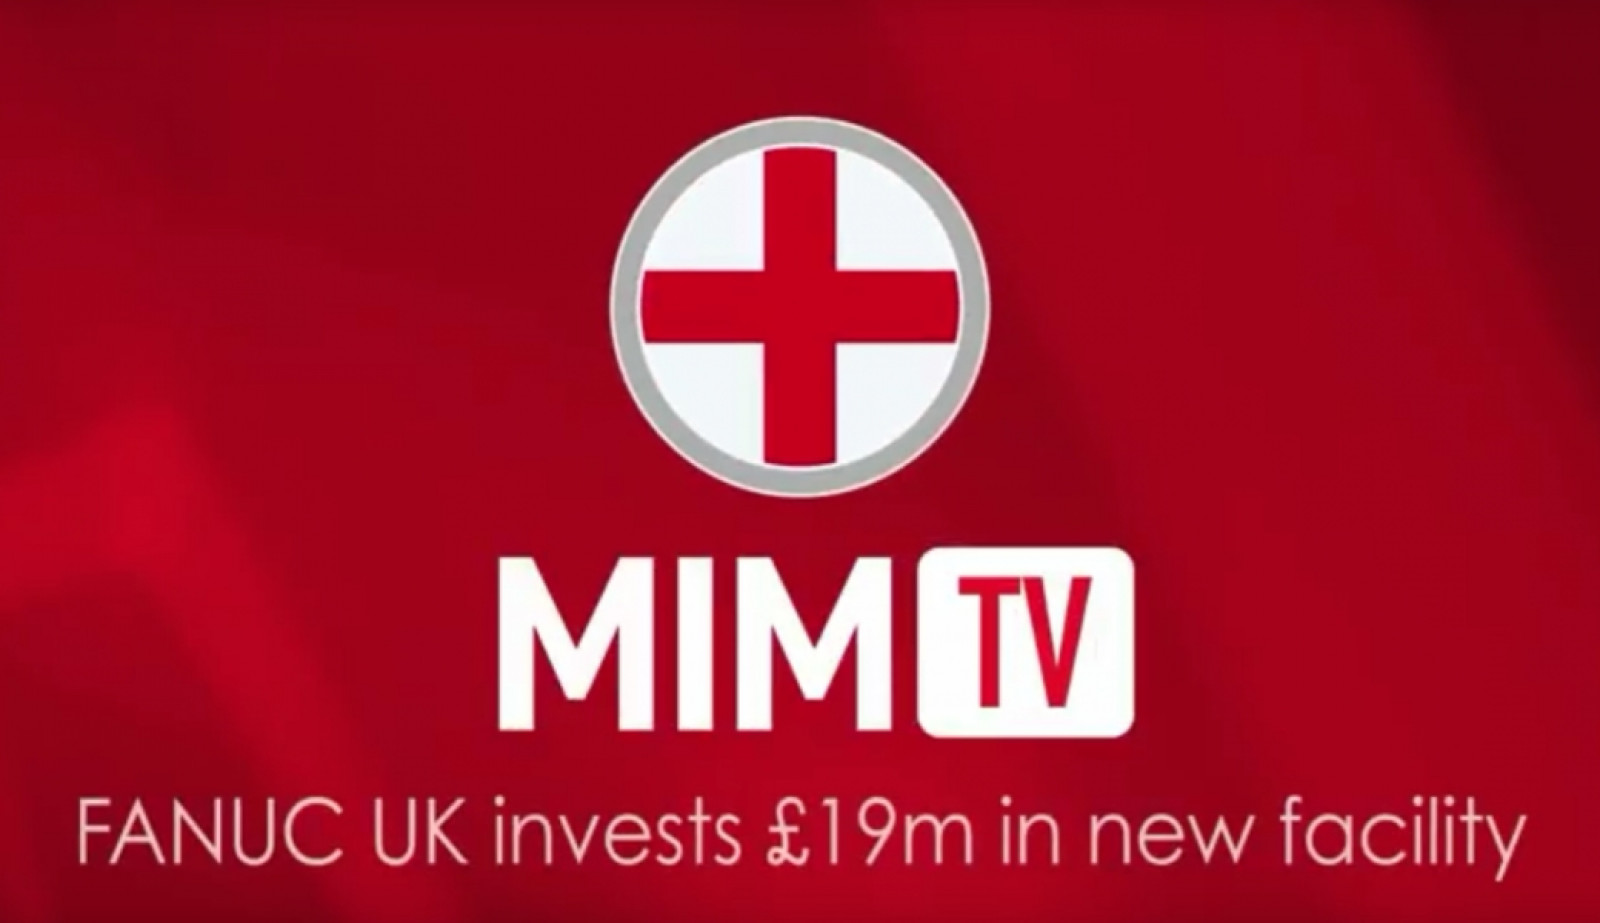 MiM TV - £19 million investment at FANUC UK